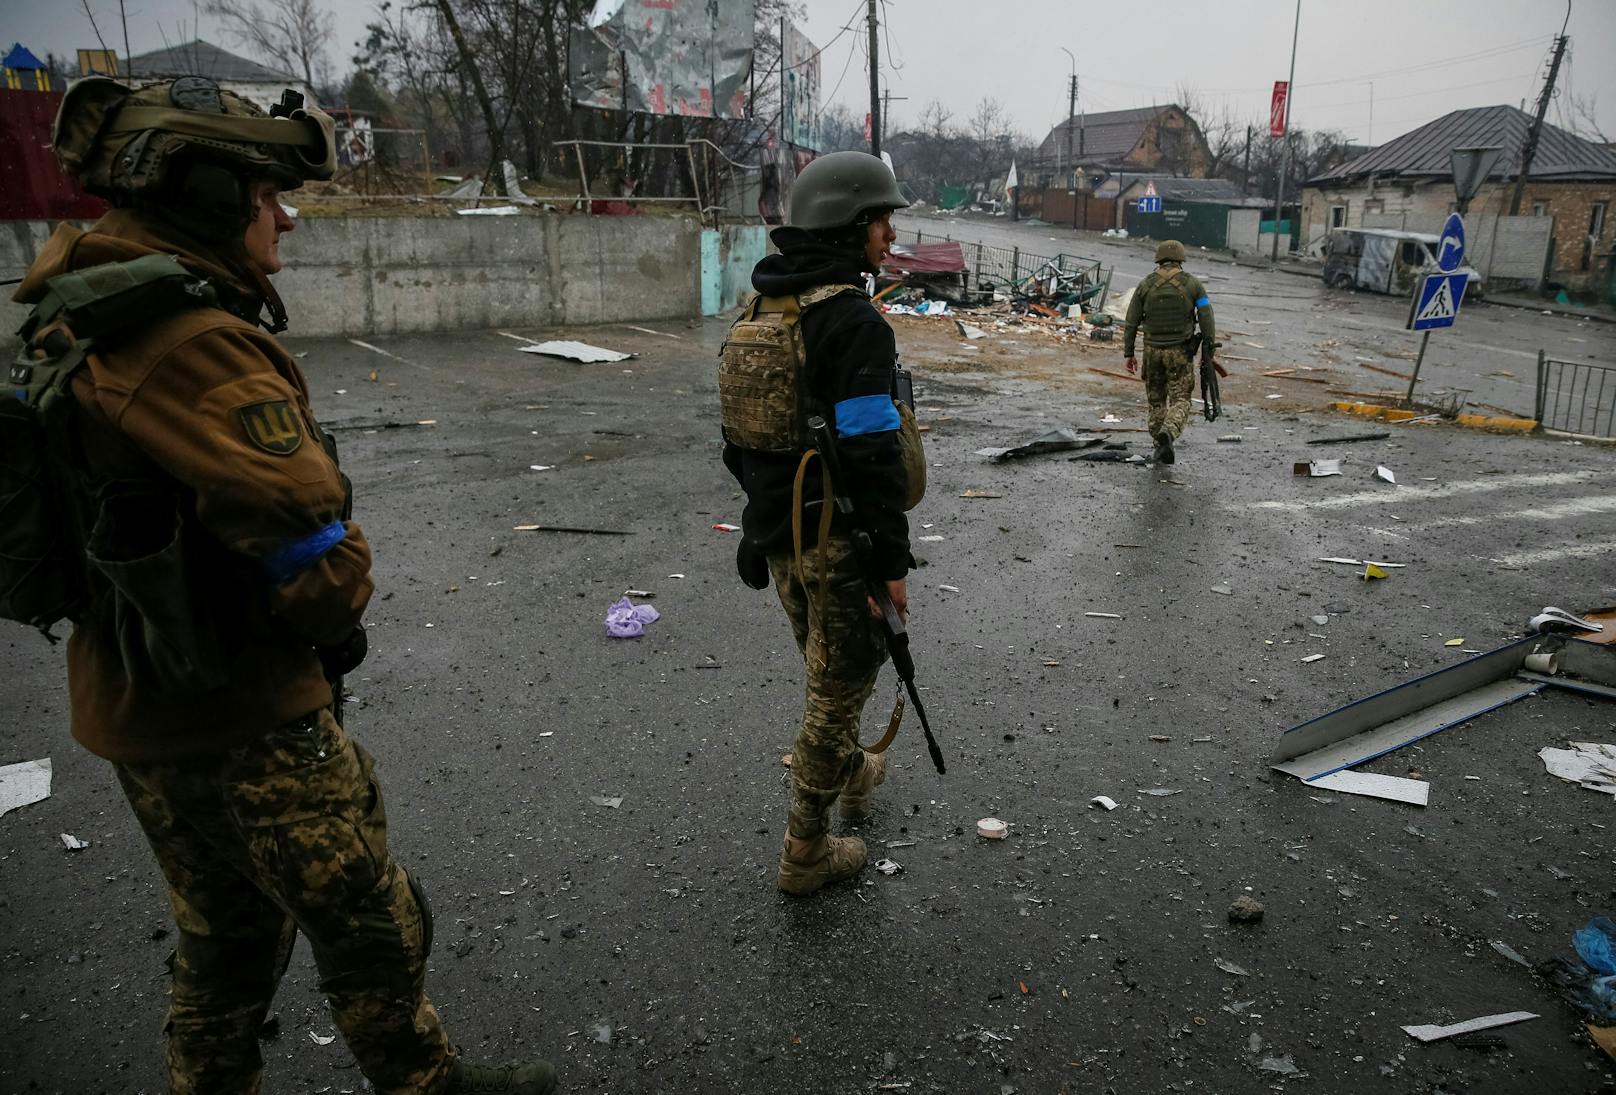 "Die Entmilitarisierung Russlands ist weit fortgeschritten", sagte Kyslyzja. Für die russische Regierung seien die Verluste "ein beispielloser Schlag".